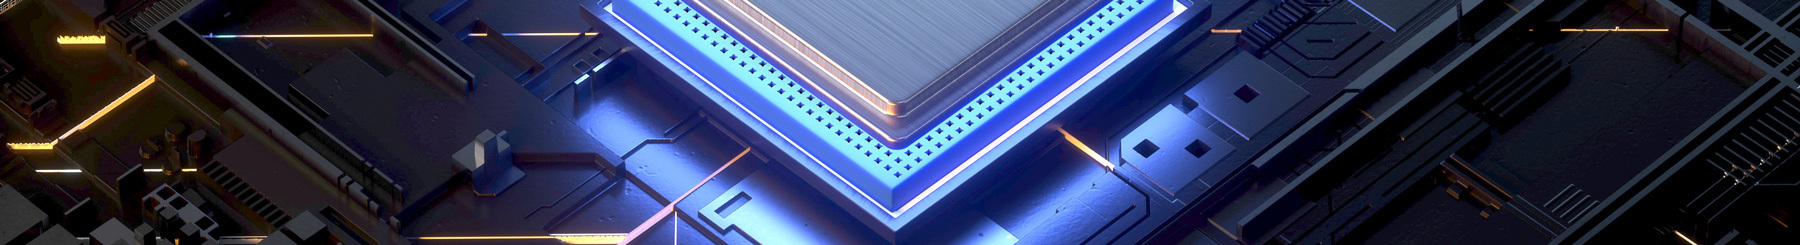 Circuit électronique futuriste avec éclairage LED bleu, symbolisant l'innovation technologique.